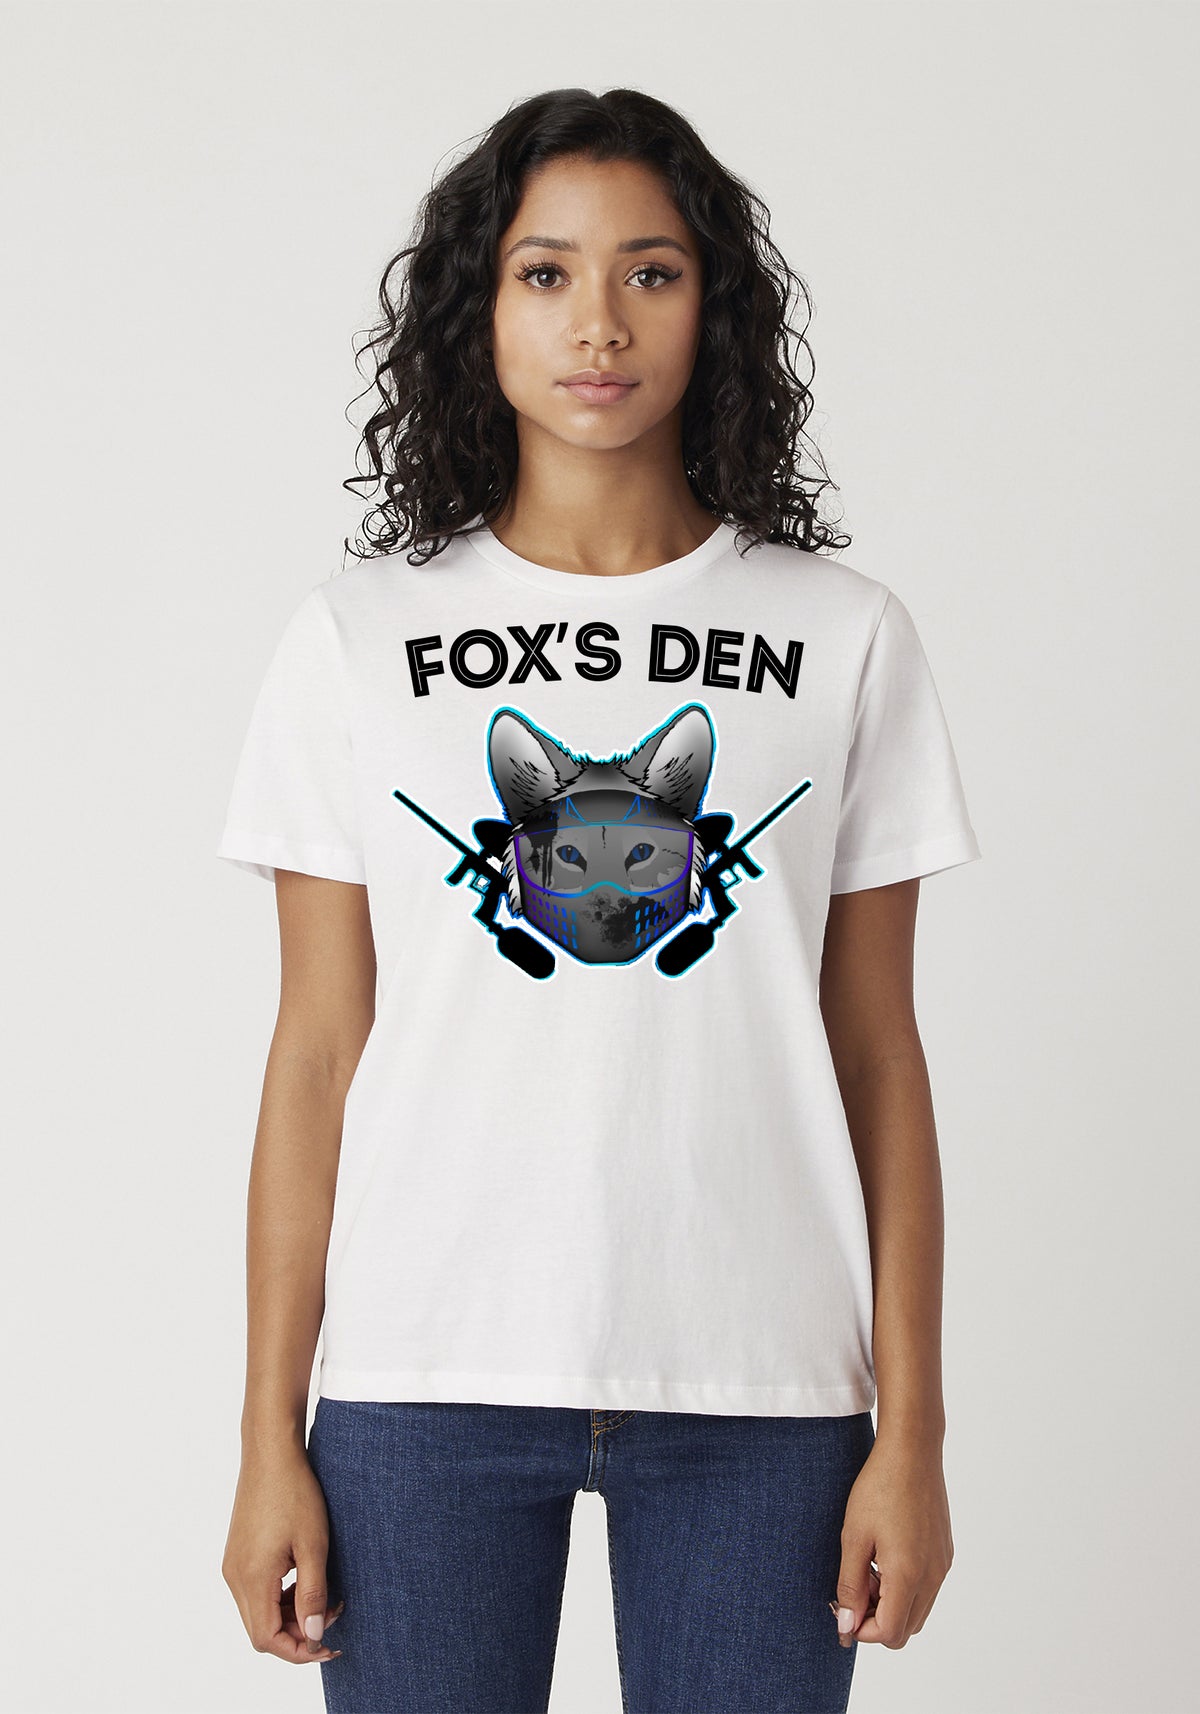 Fox's Den Paintball Team Logo T-Shirt